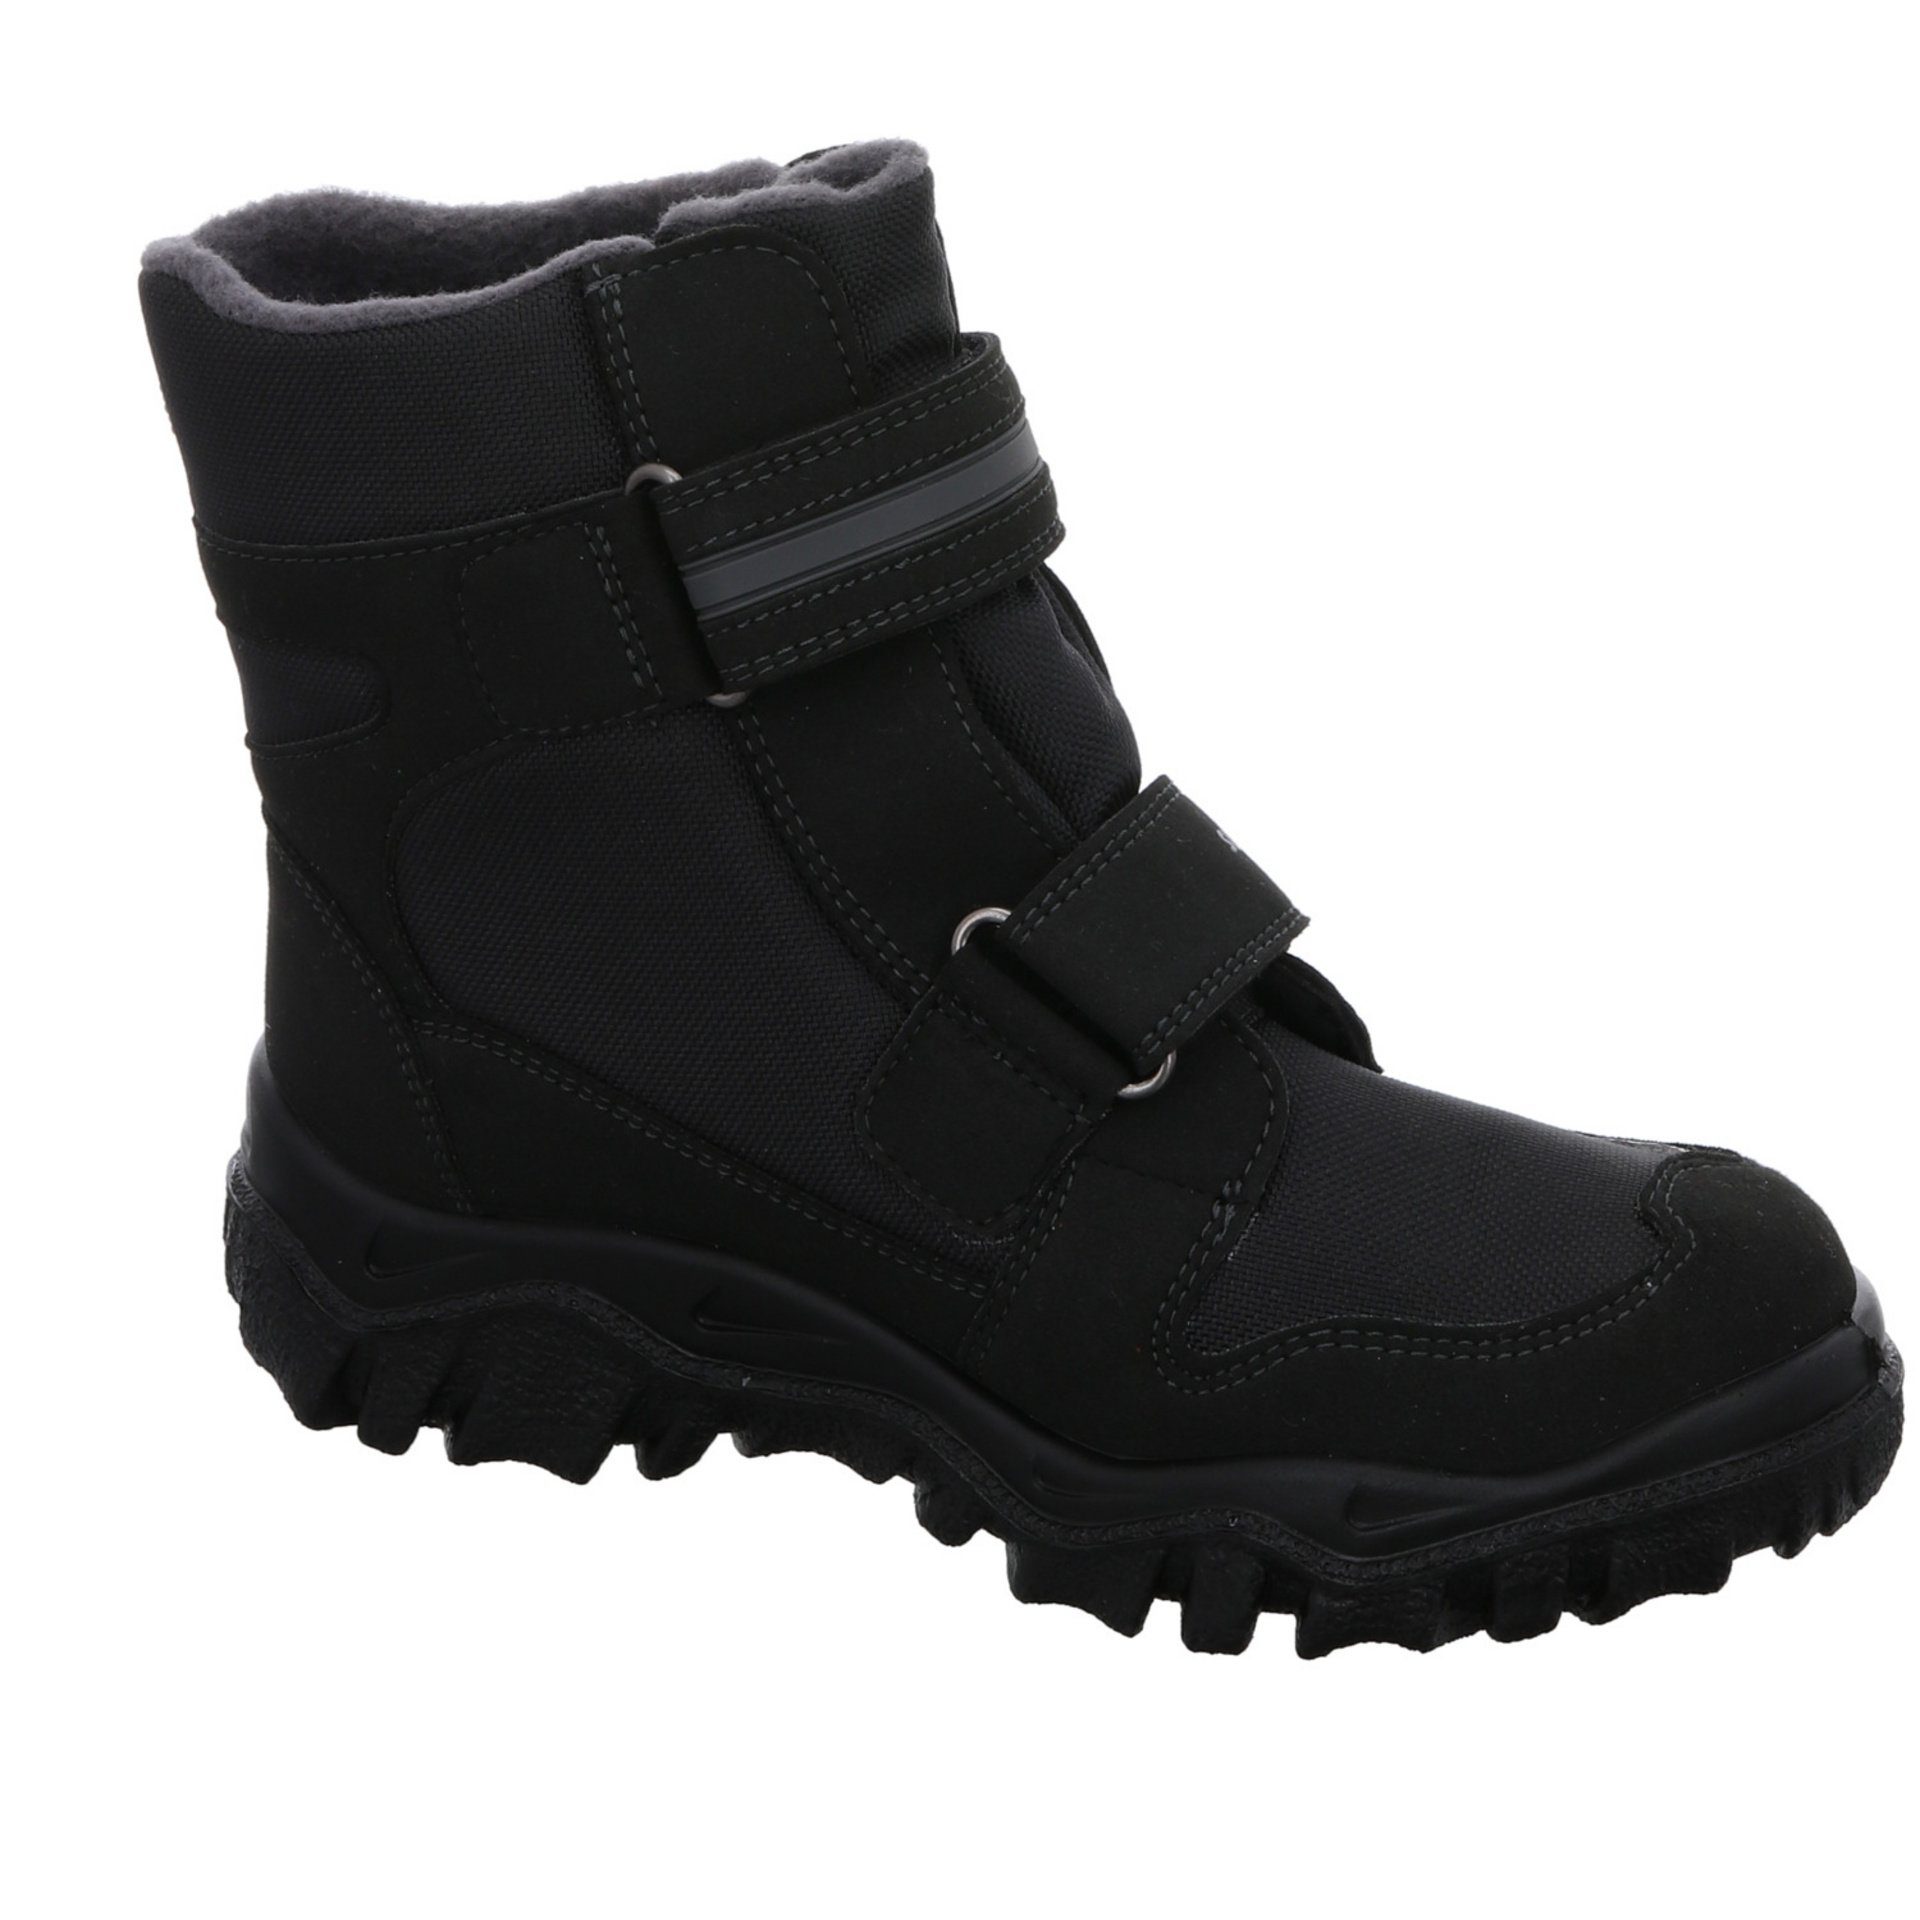 Superfit Jungen Stiefel Synthetikkombination Stiefel Schuhe Boots schwarz 2 grau Gore-Tex Husky